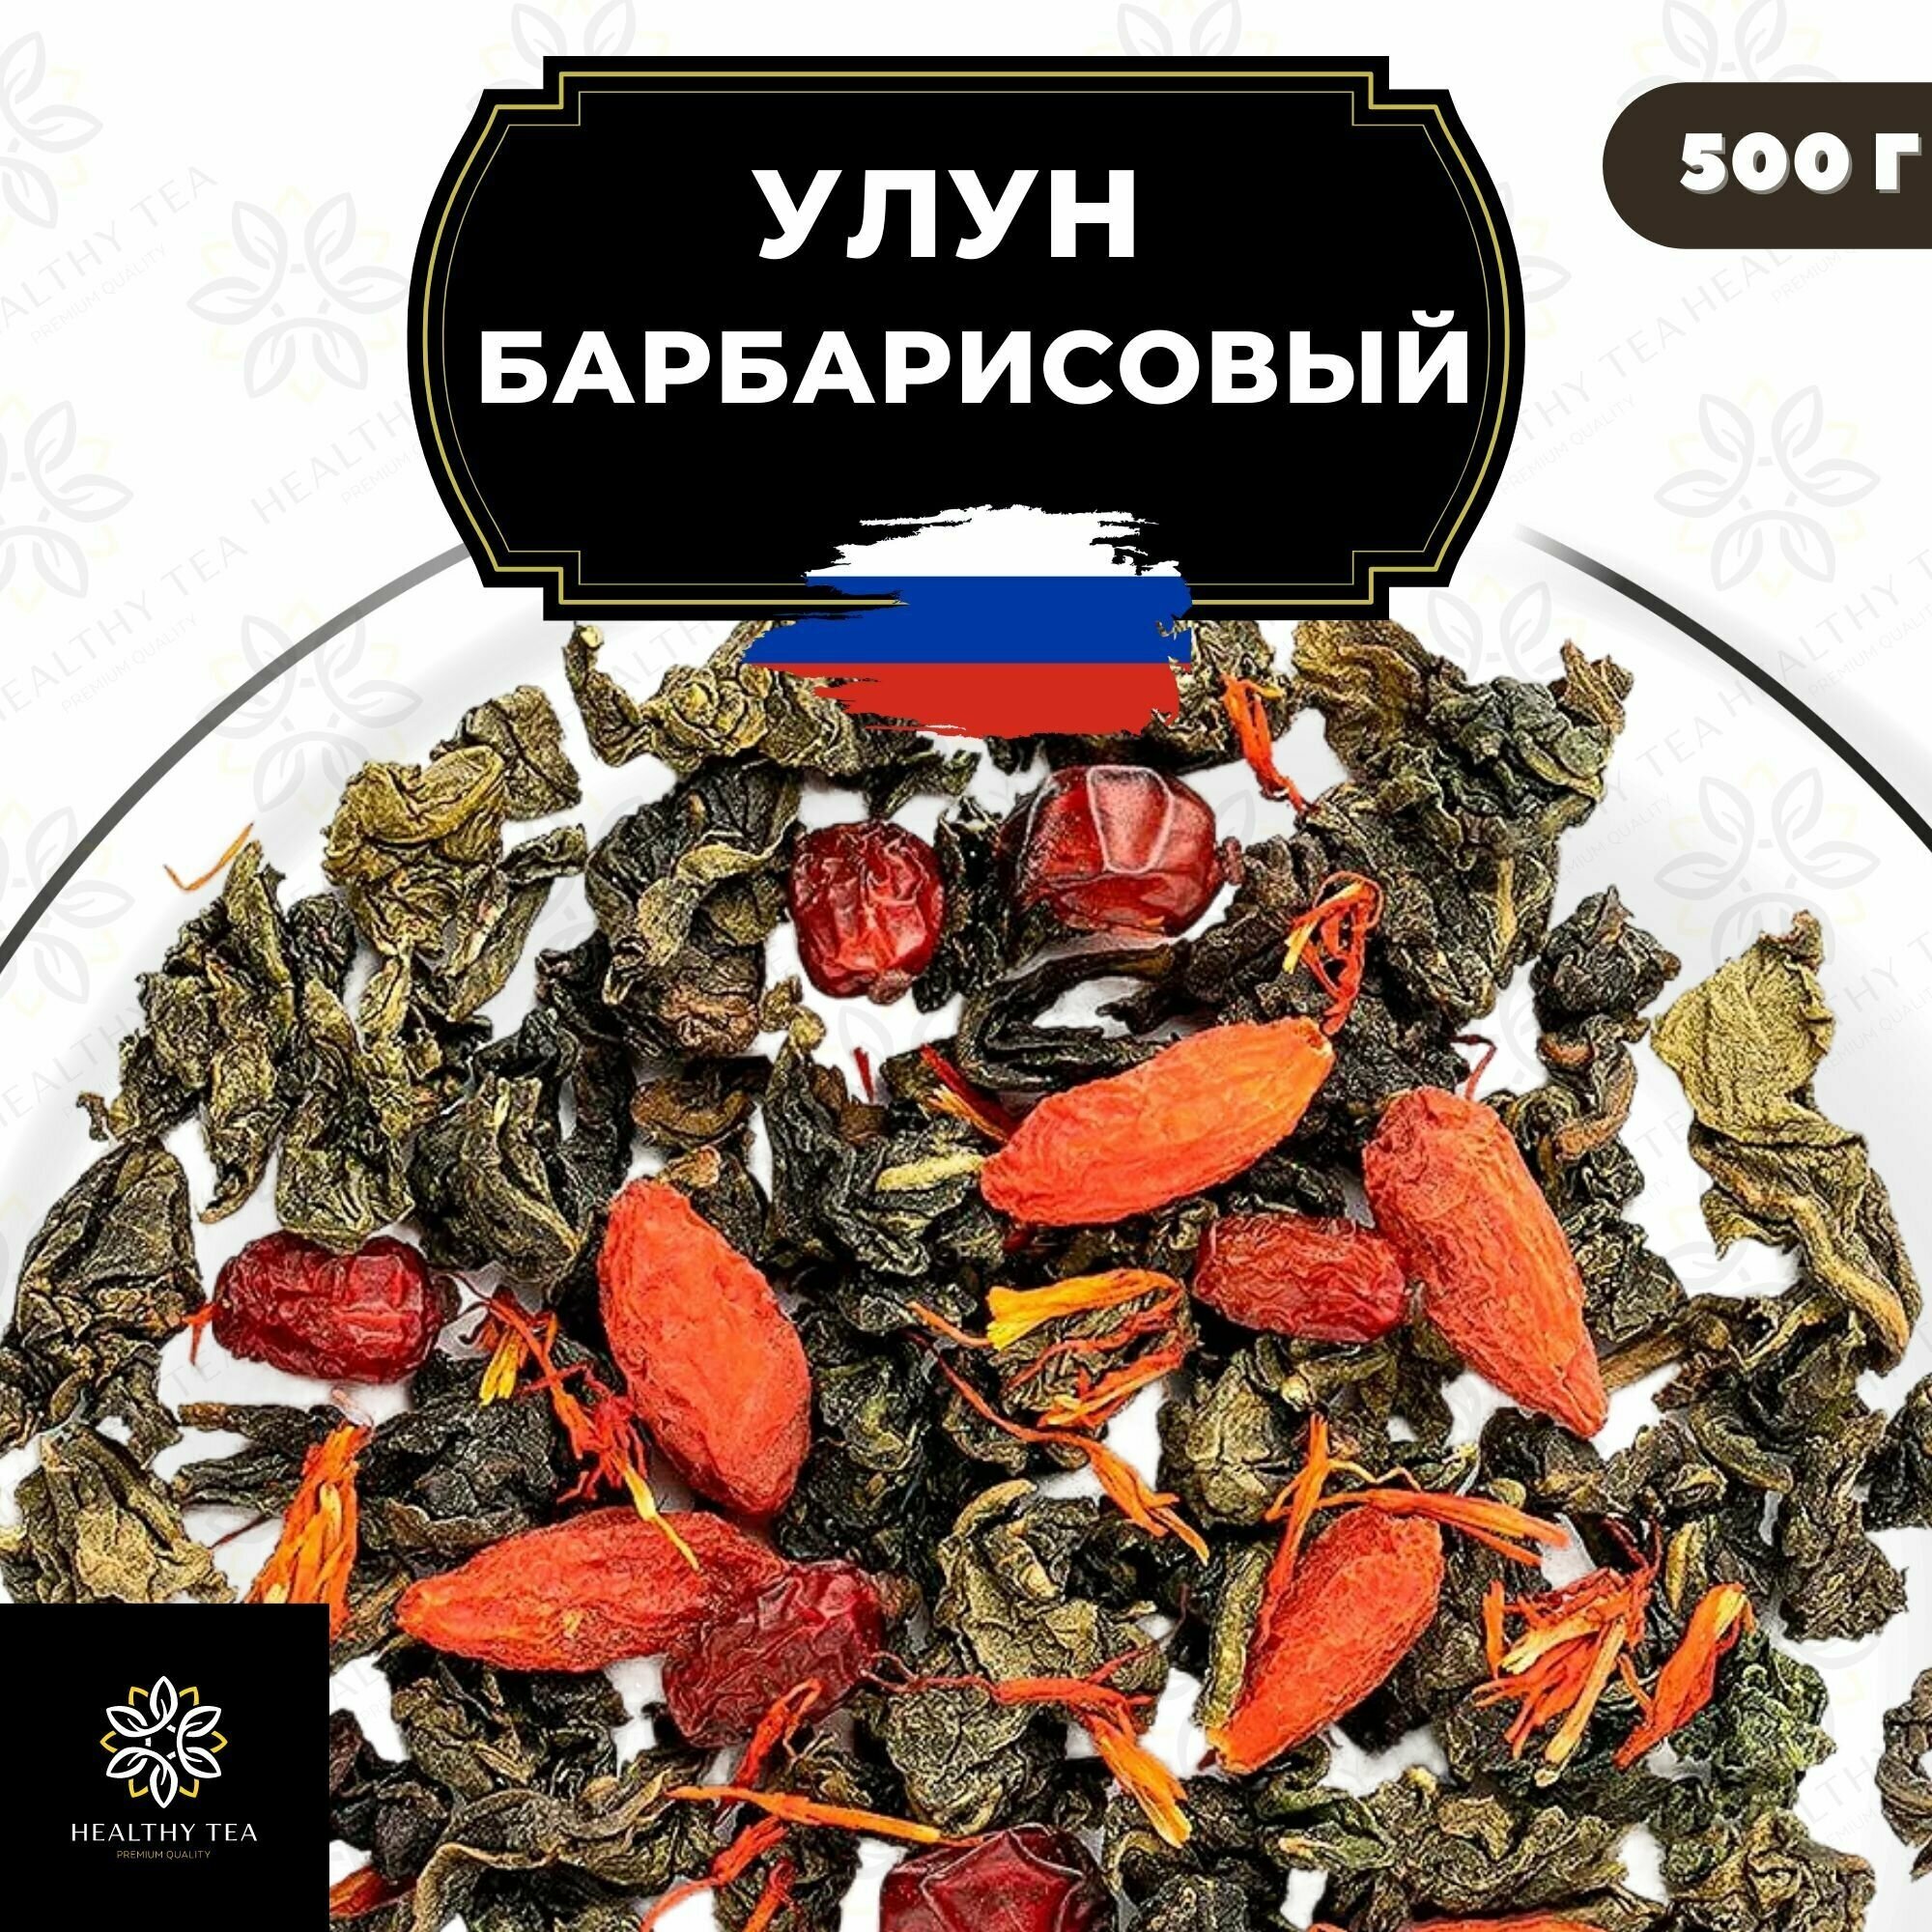 Китайский чай Улун Барбарисовый с годжи и сафлором Полезный чай / HEALTHY TEA, 500 г